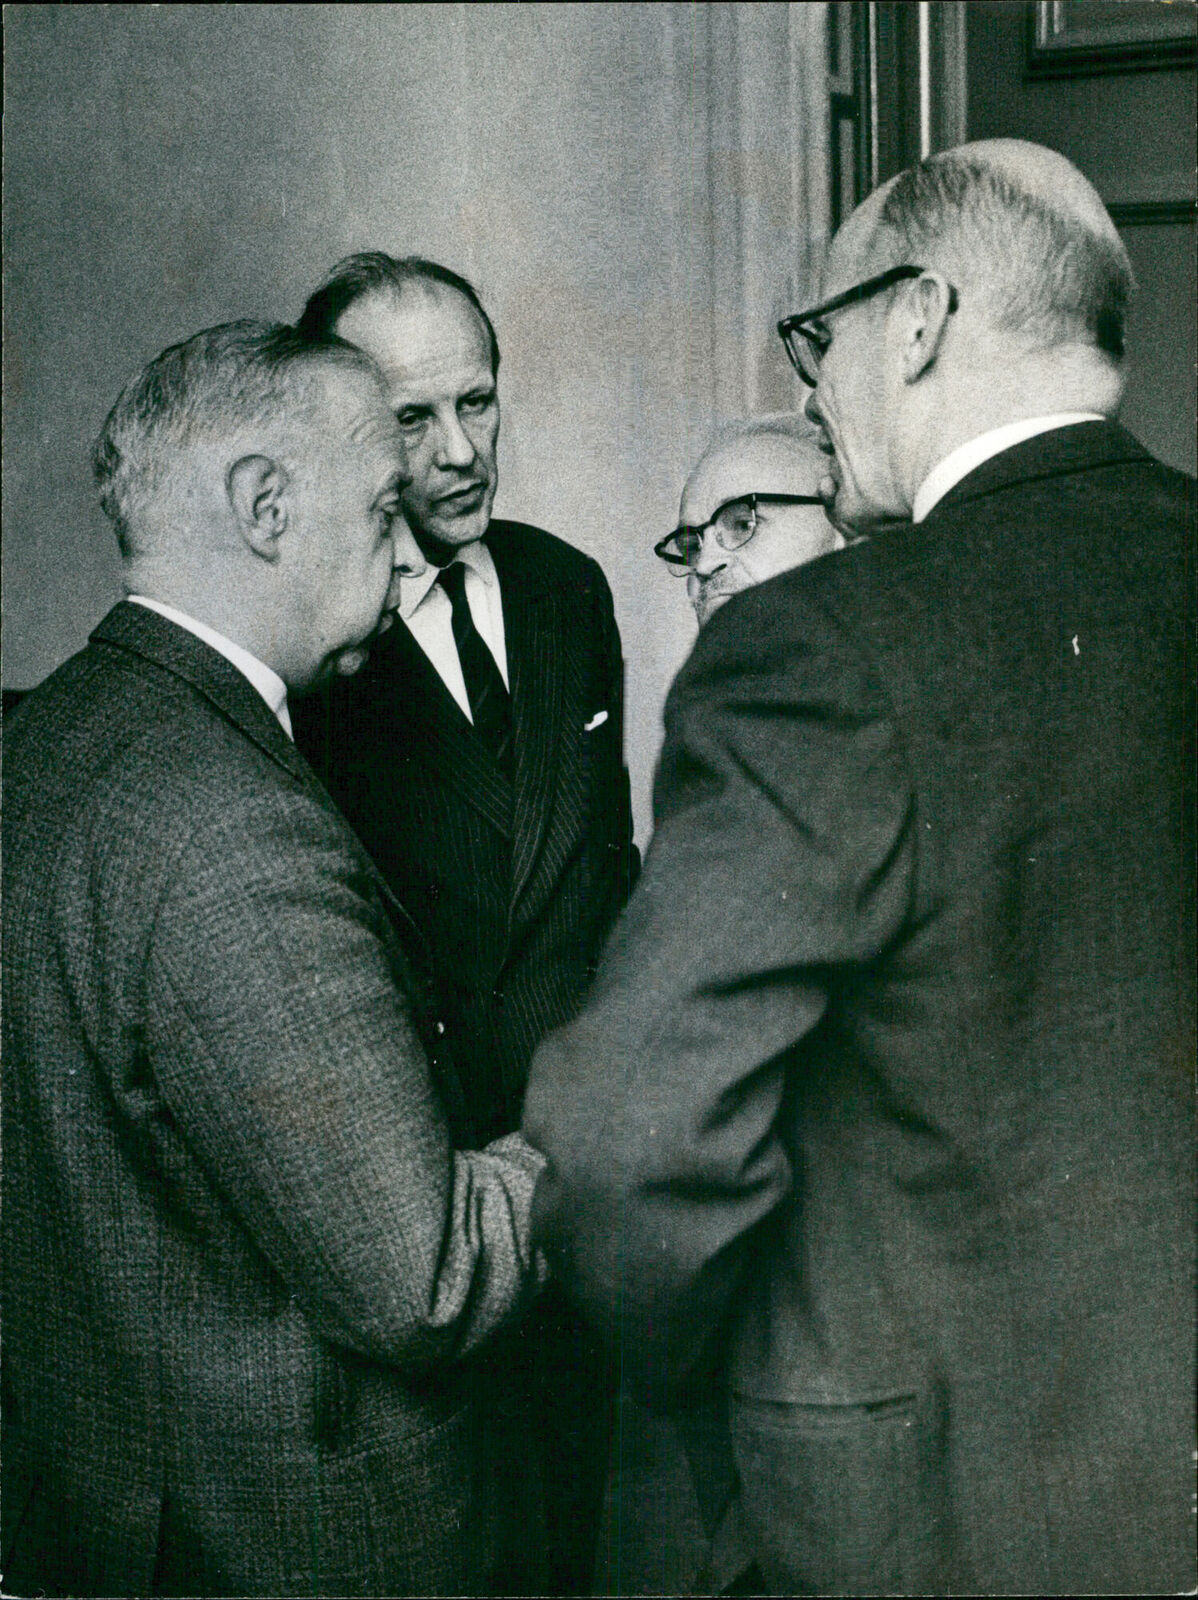 Gunnar Hjerne, P.O. Hanson, Bengt Lind and Gost... - Vintage Photograph 2737026